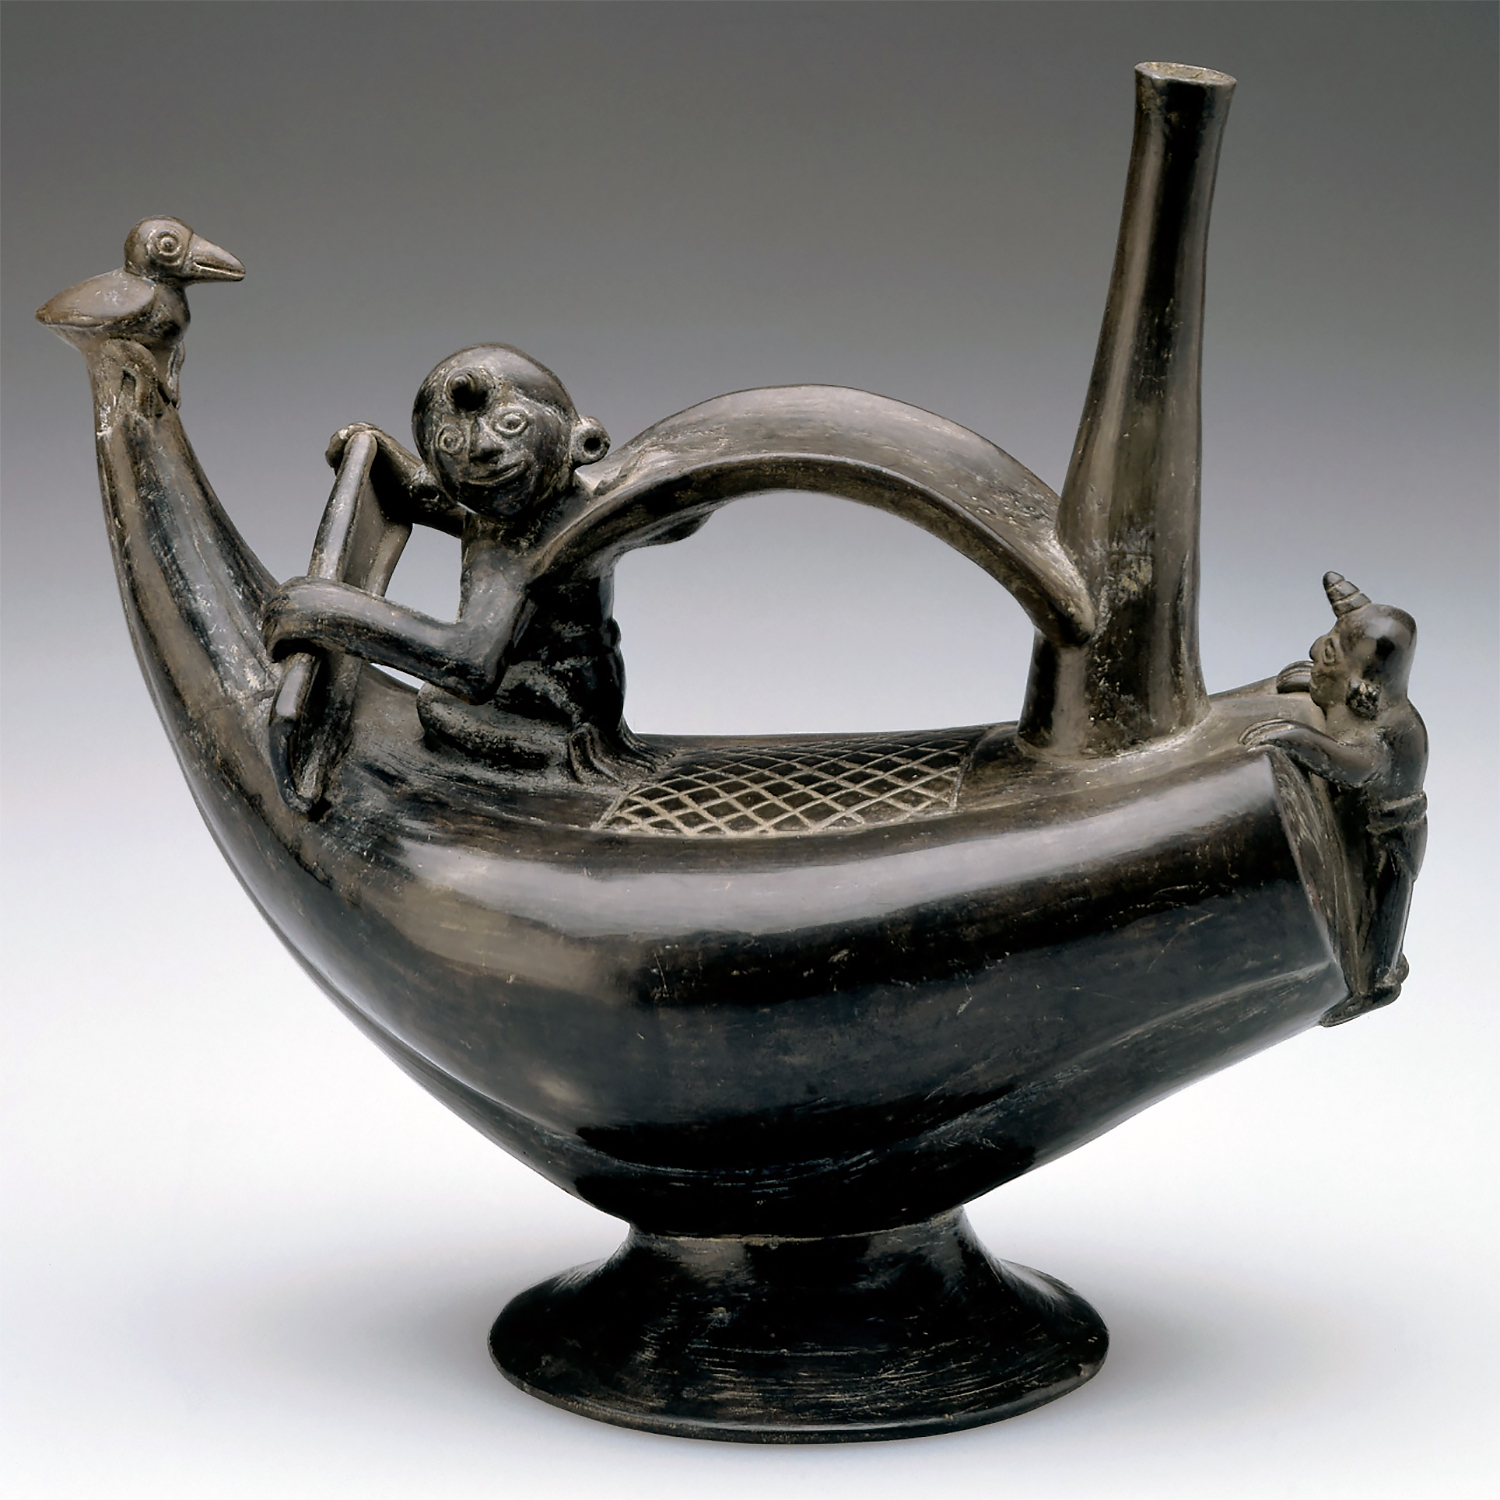 Сосуд в виде лодки. Чиму (?), 1100-1400 гг. н.э. Коллекция Cincinnati Art Museum.